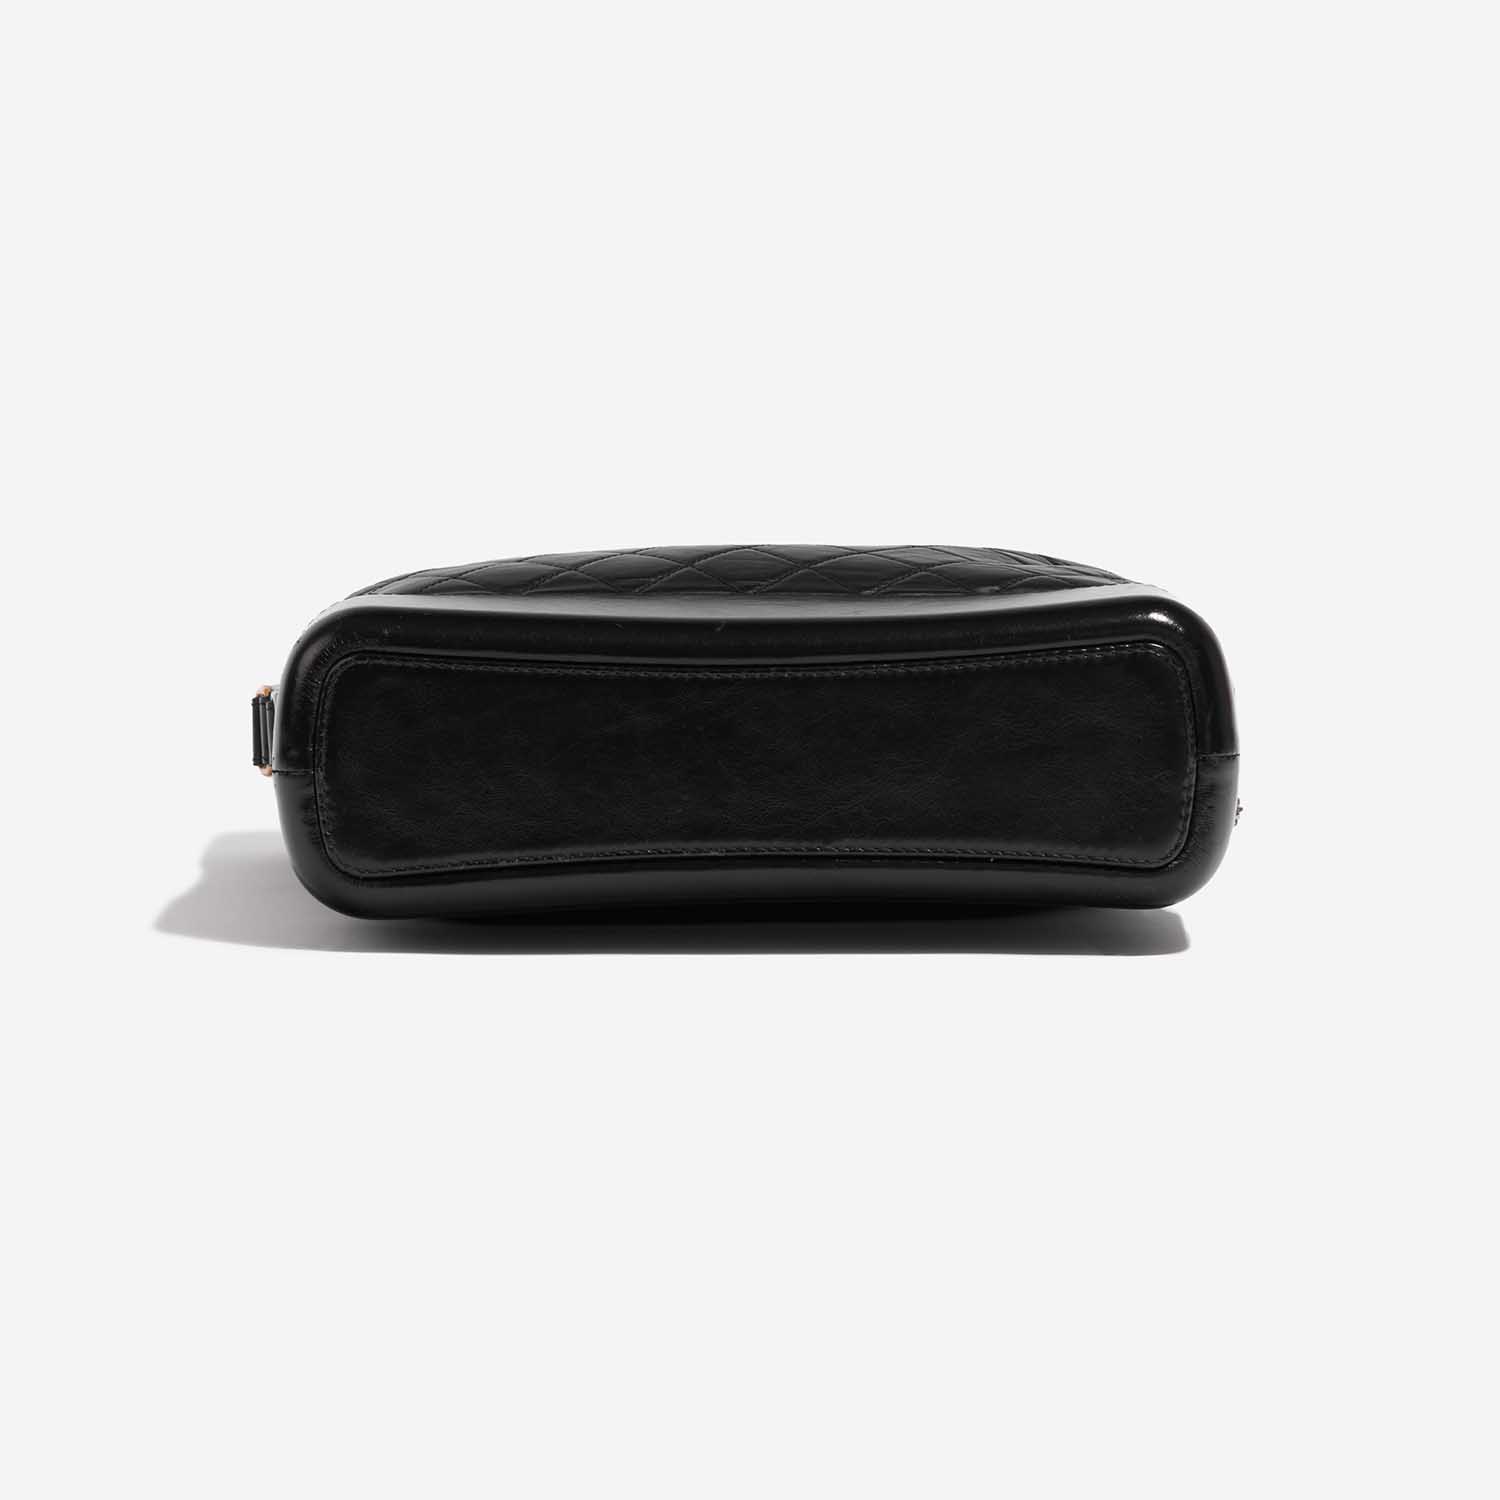 Sac Chanel Gabrielle Large Veau Noir Noir Fond | Vendez votre sac de créateur sur Saclab.com